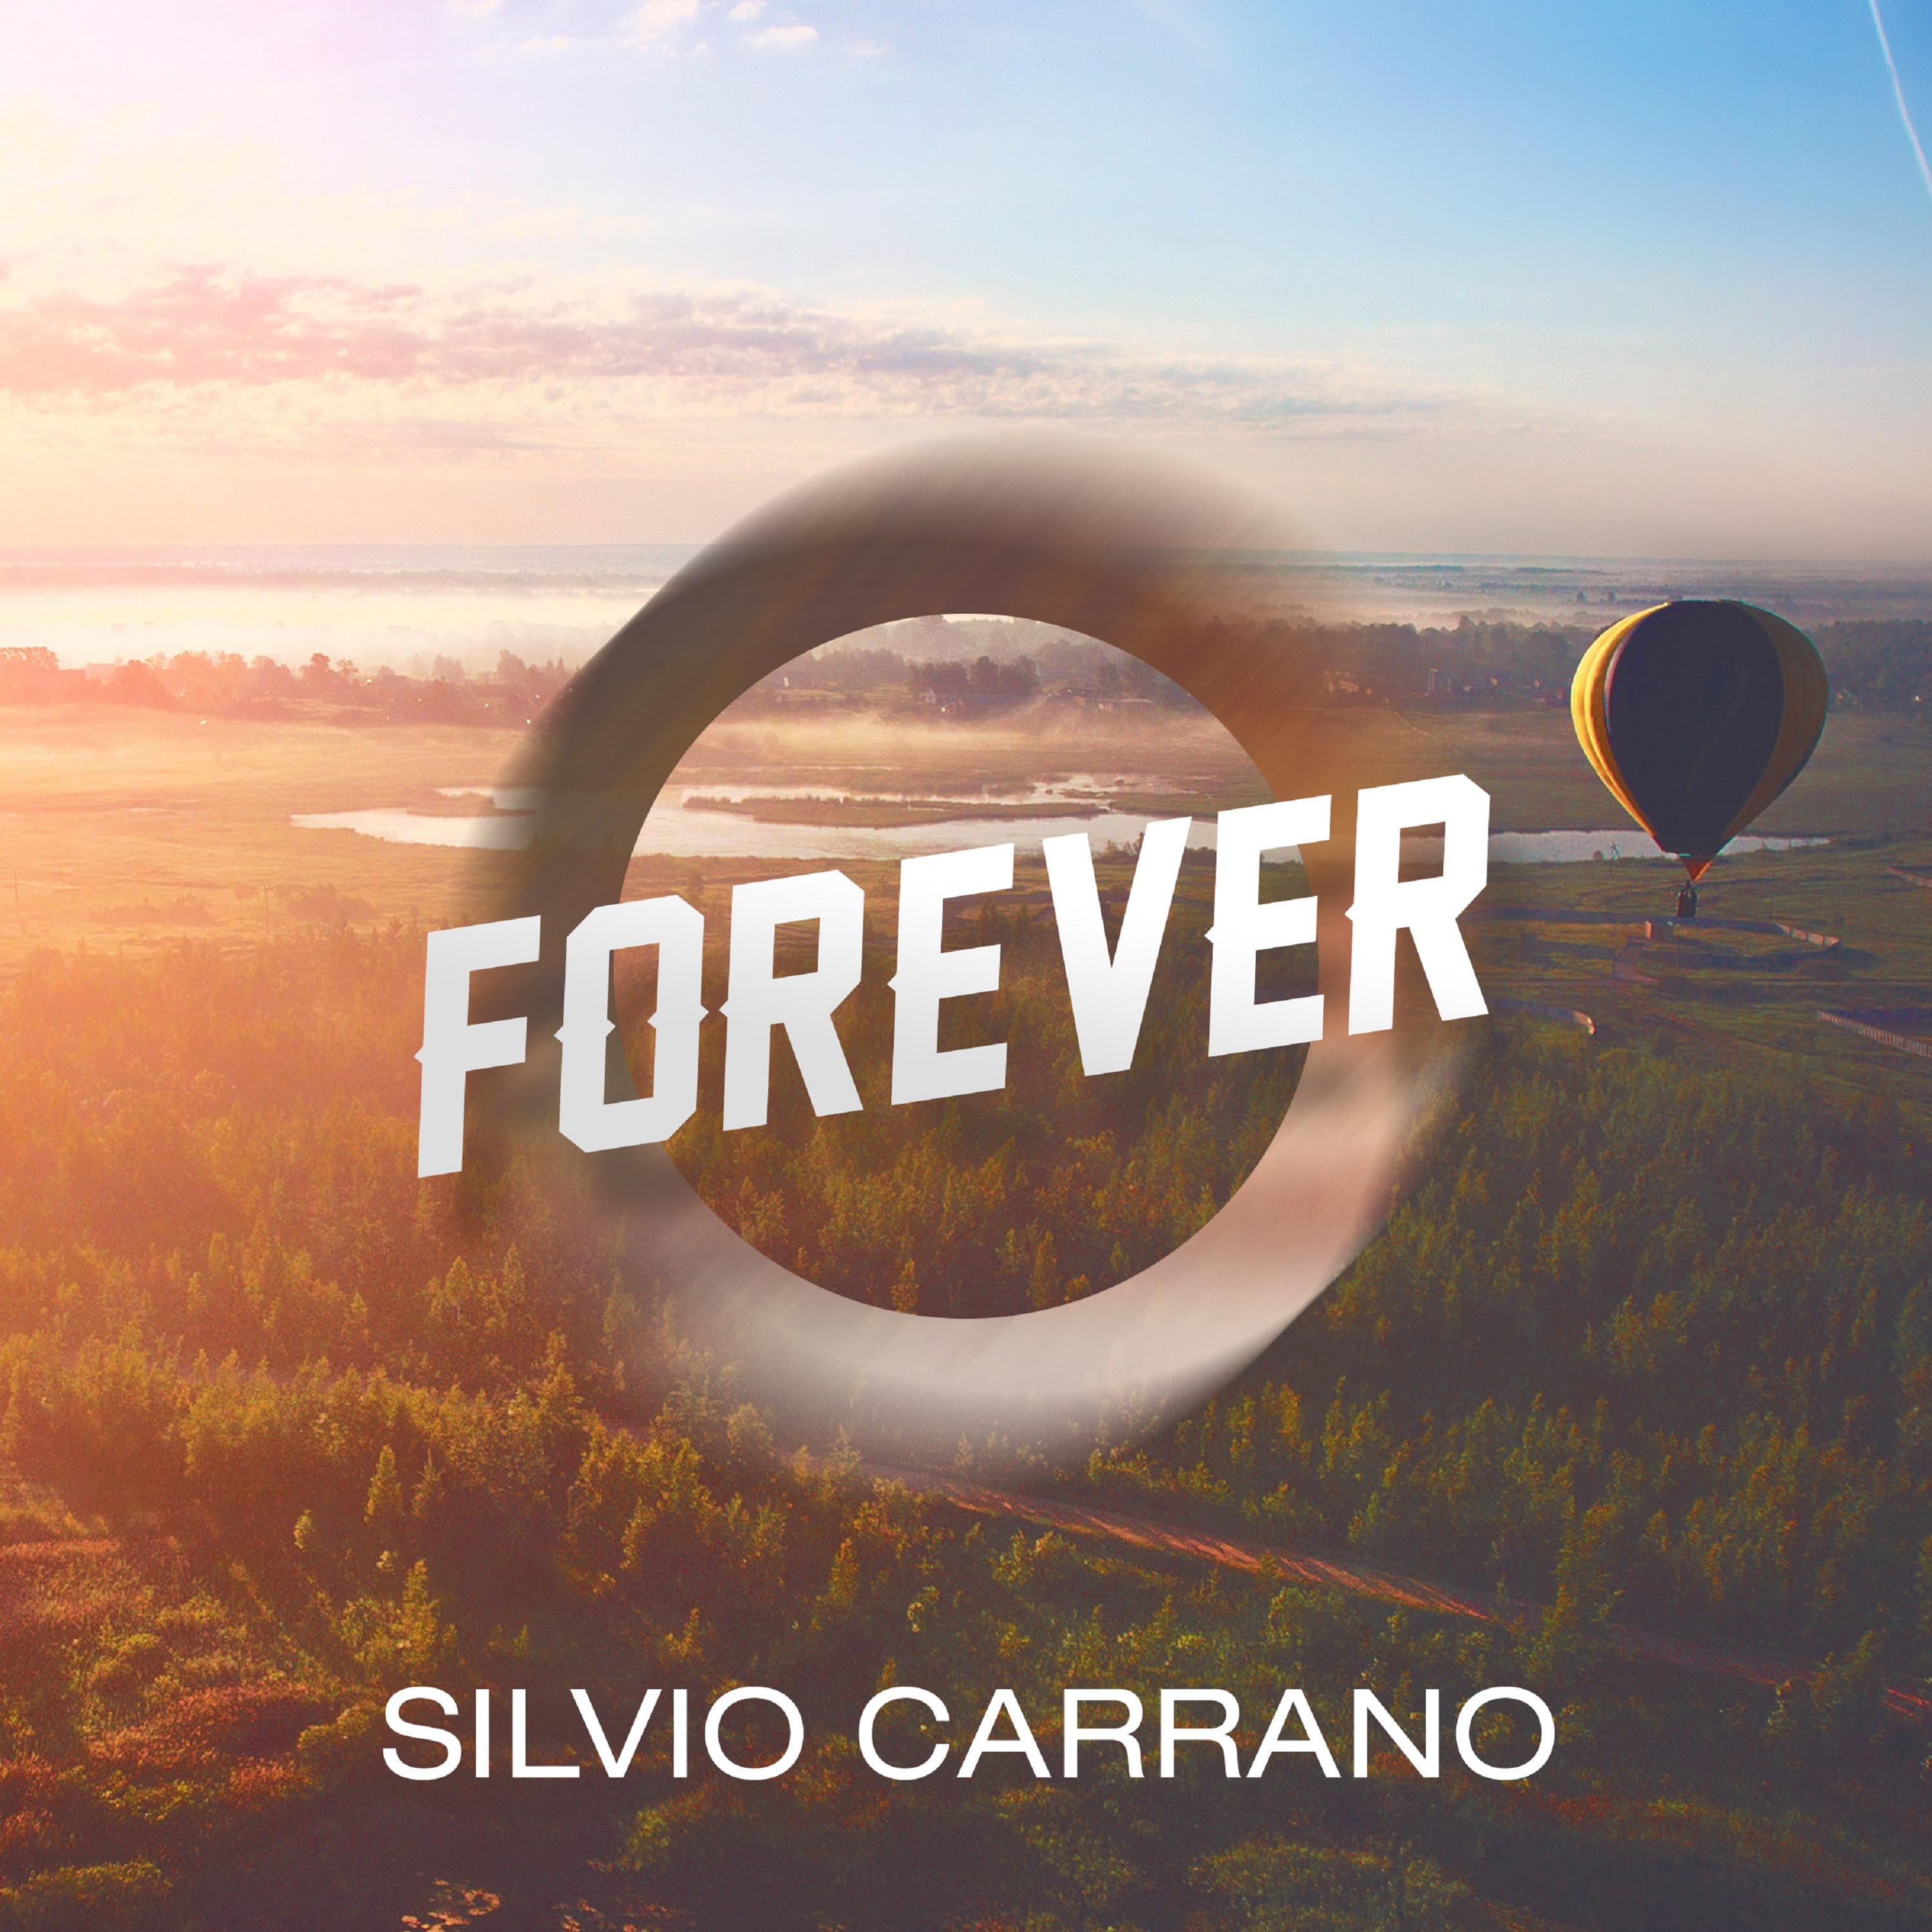 Silvio Carrano - Forever (Salento Guys Remix)